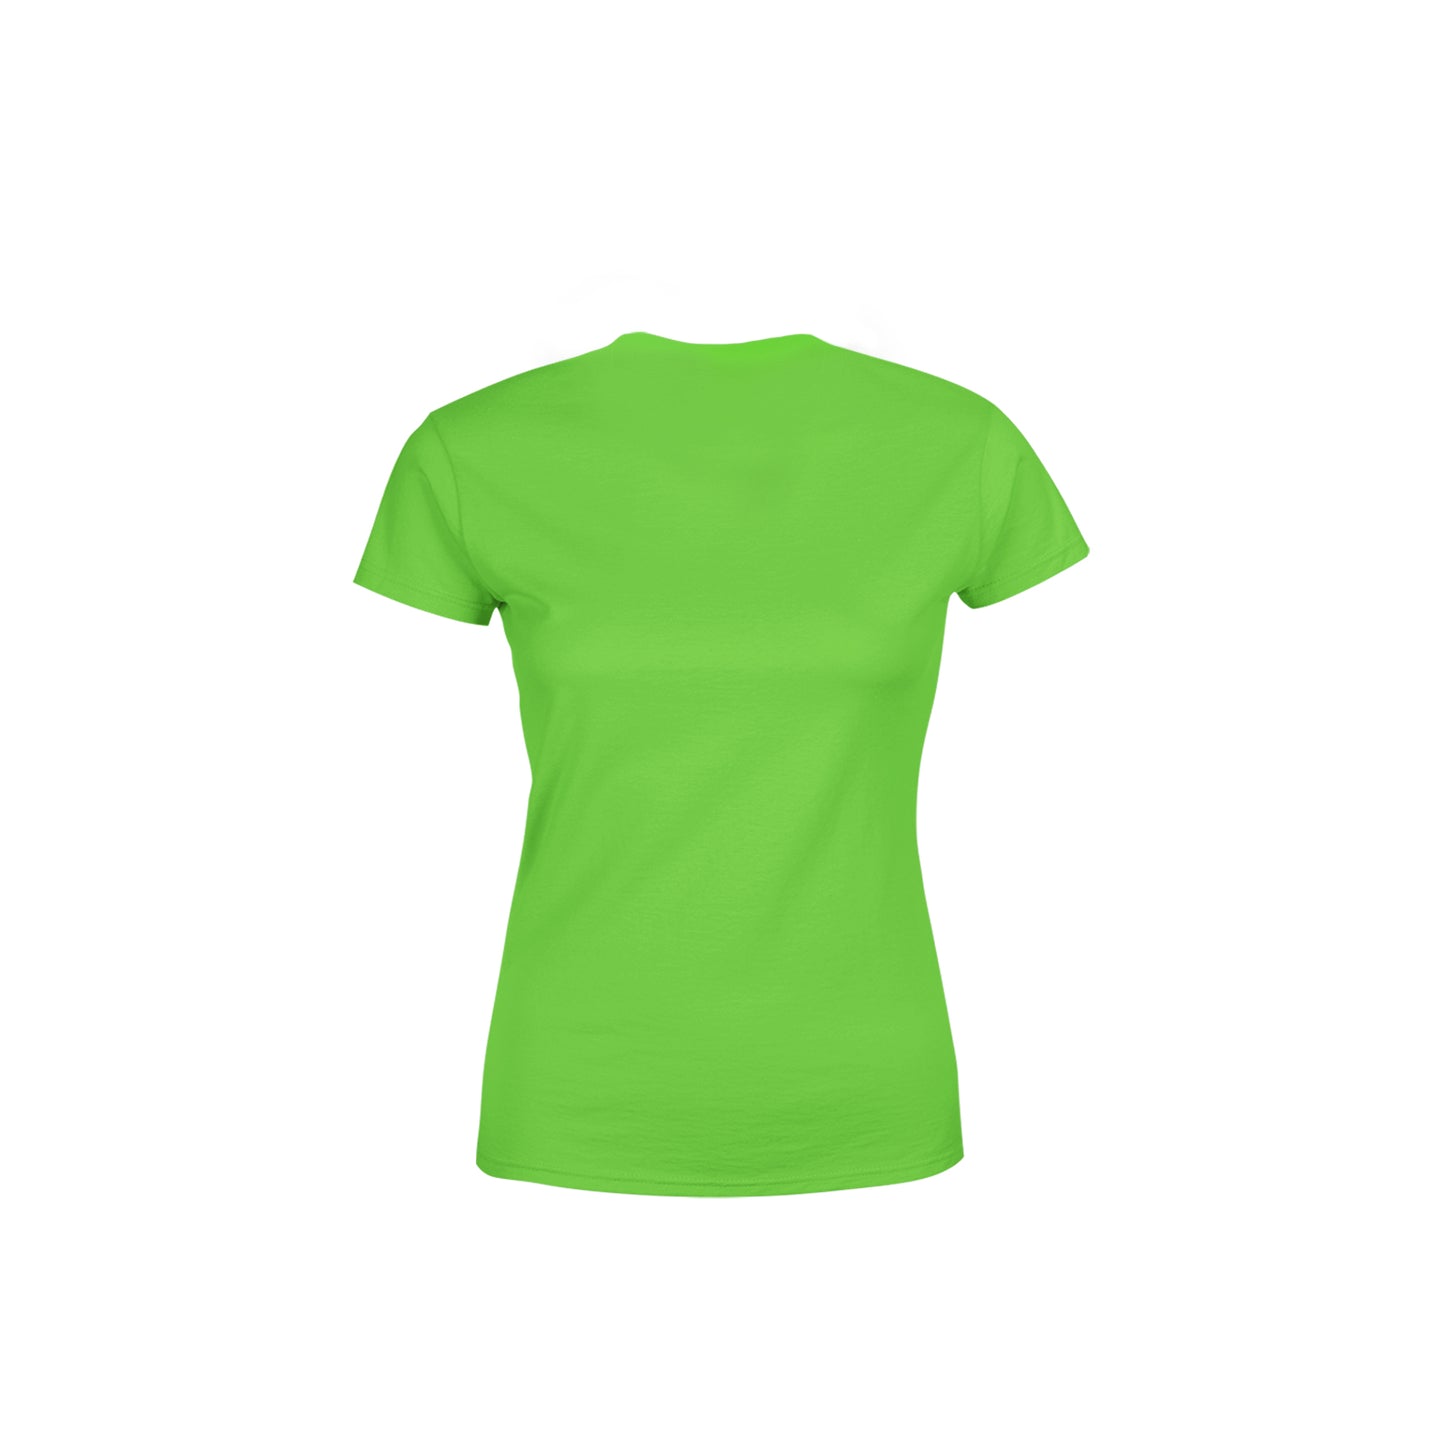 68 Number Women's T-Shirt (Liril Green)